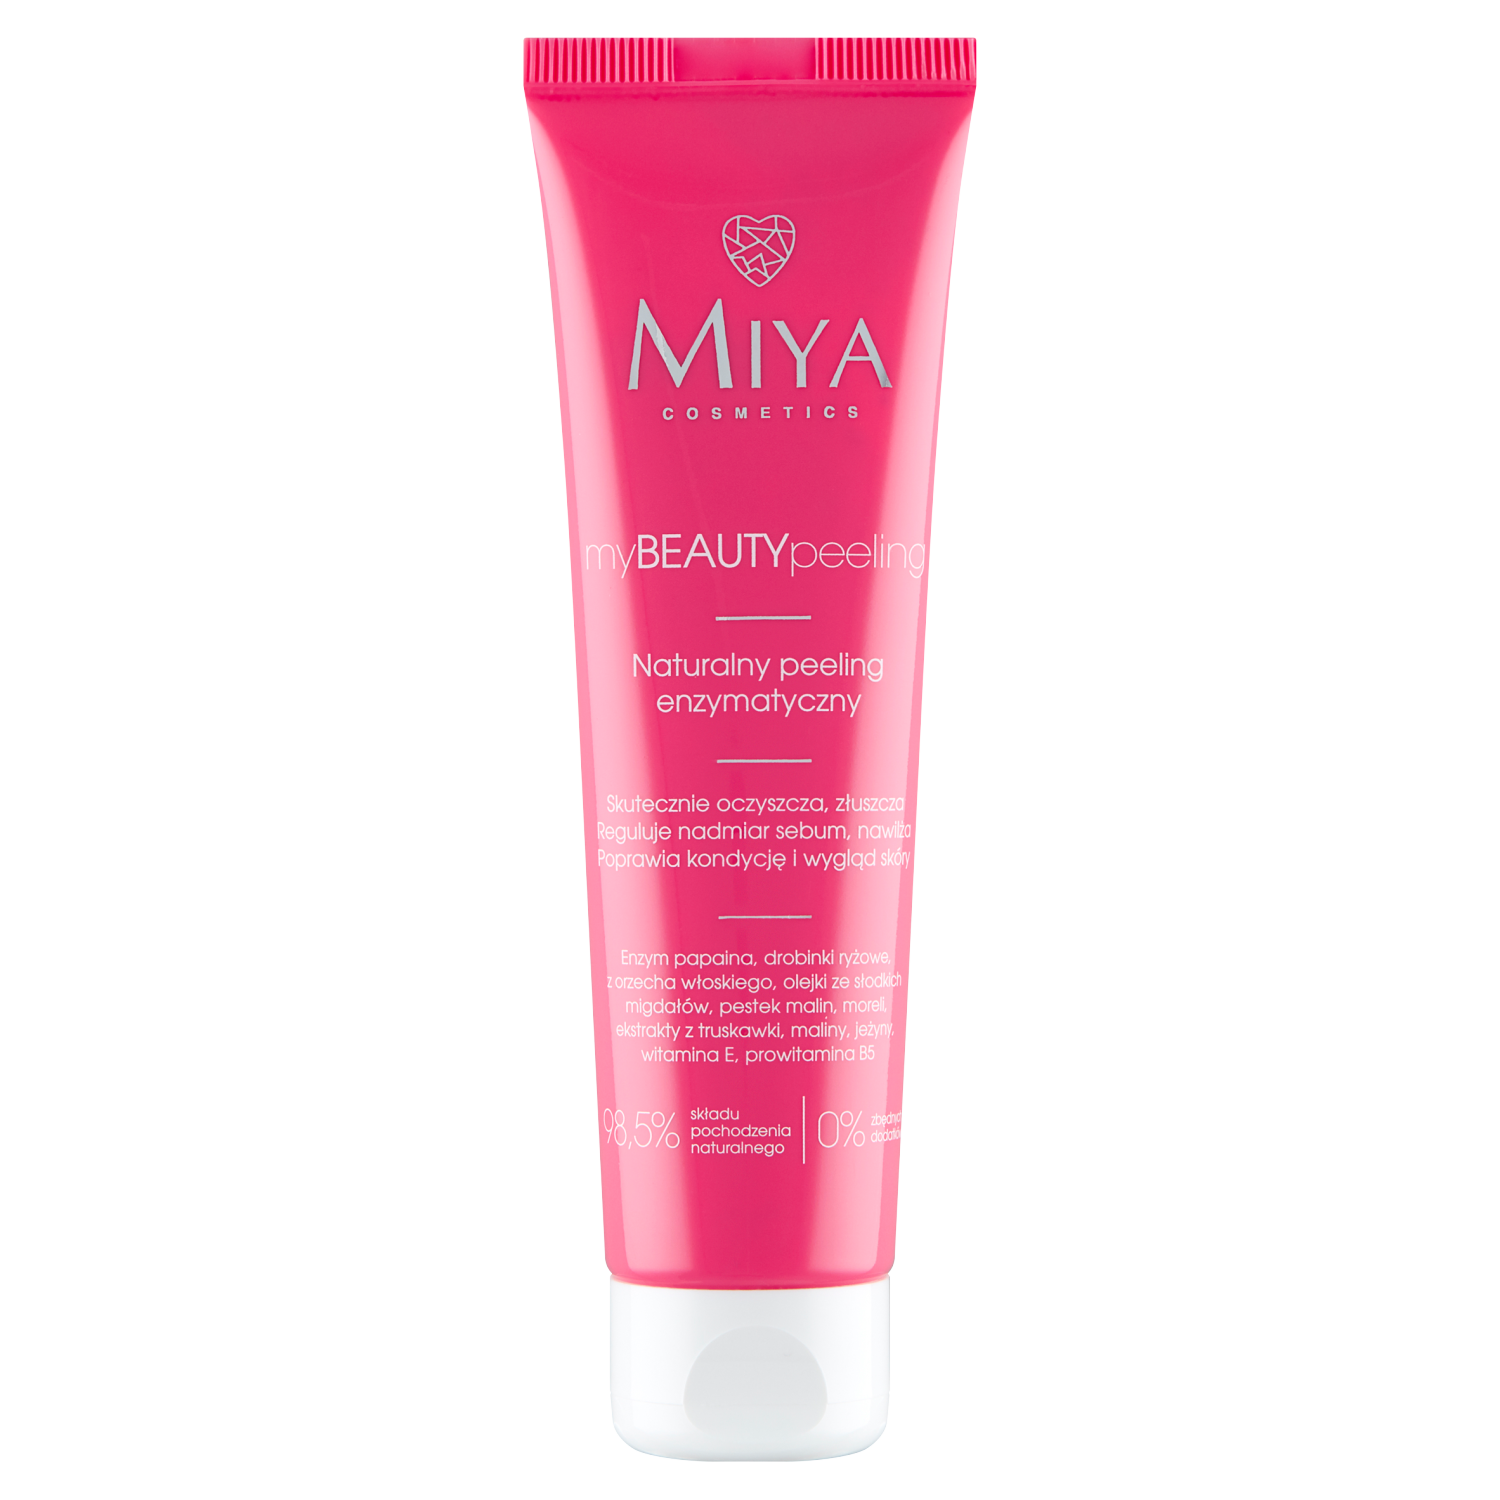 Miya Cosmetics myBEAUTYpeeling Натуральный энзимно-механический скраб для лица, 60 мл